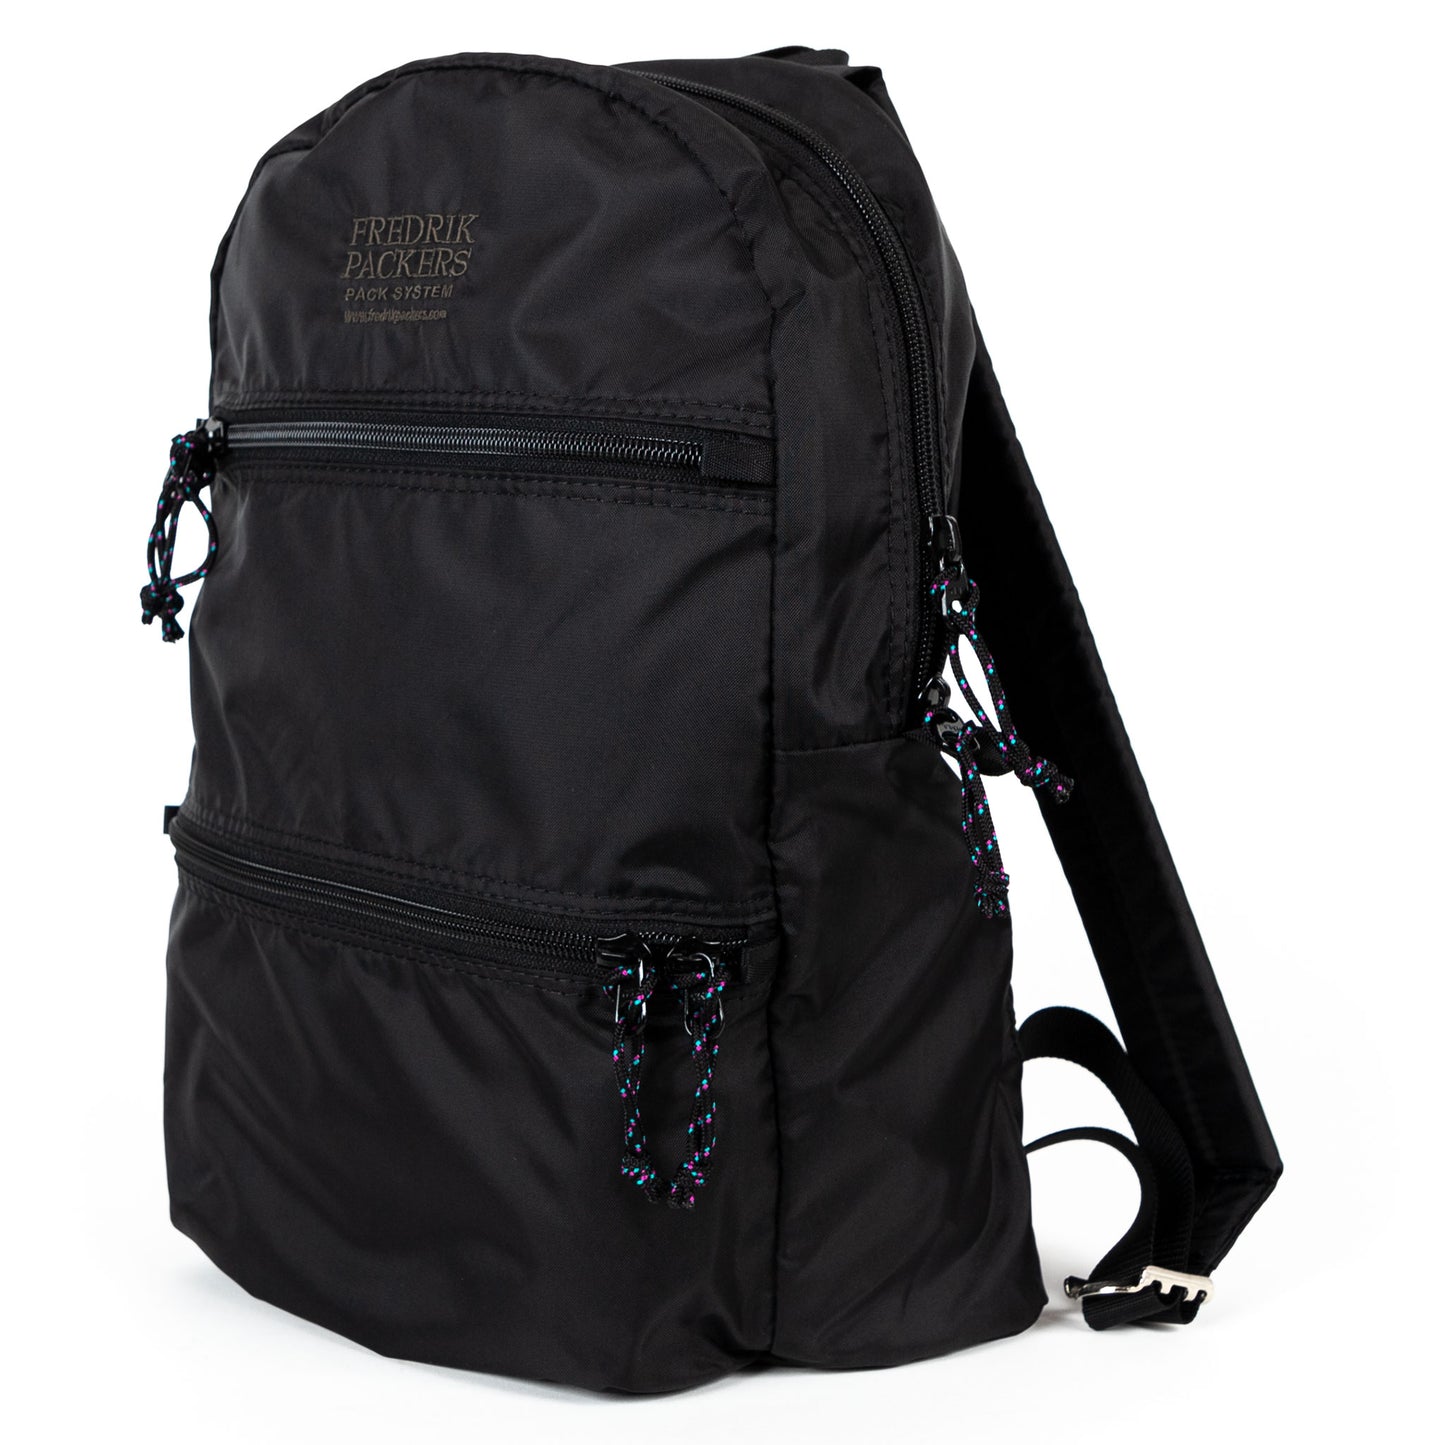 fredrik packers double zip backpack in black